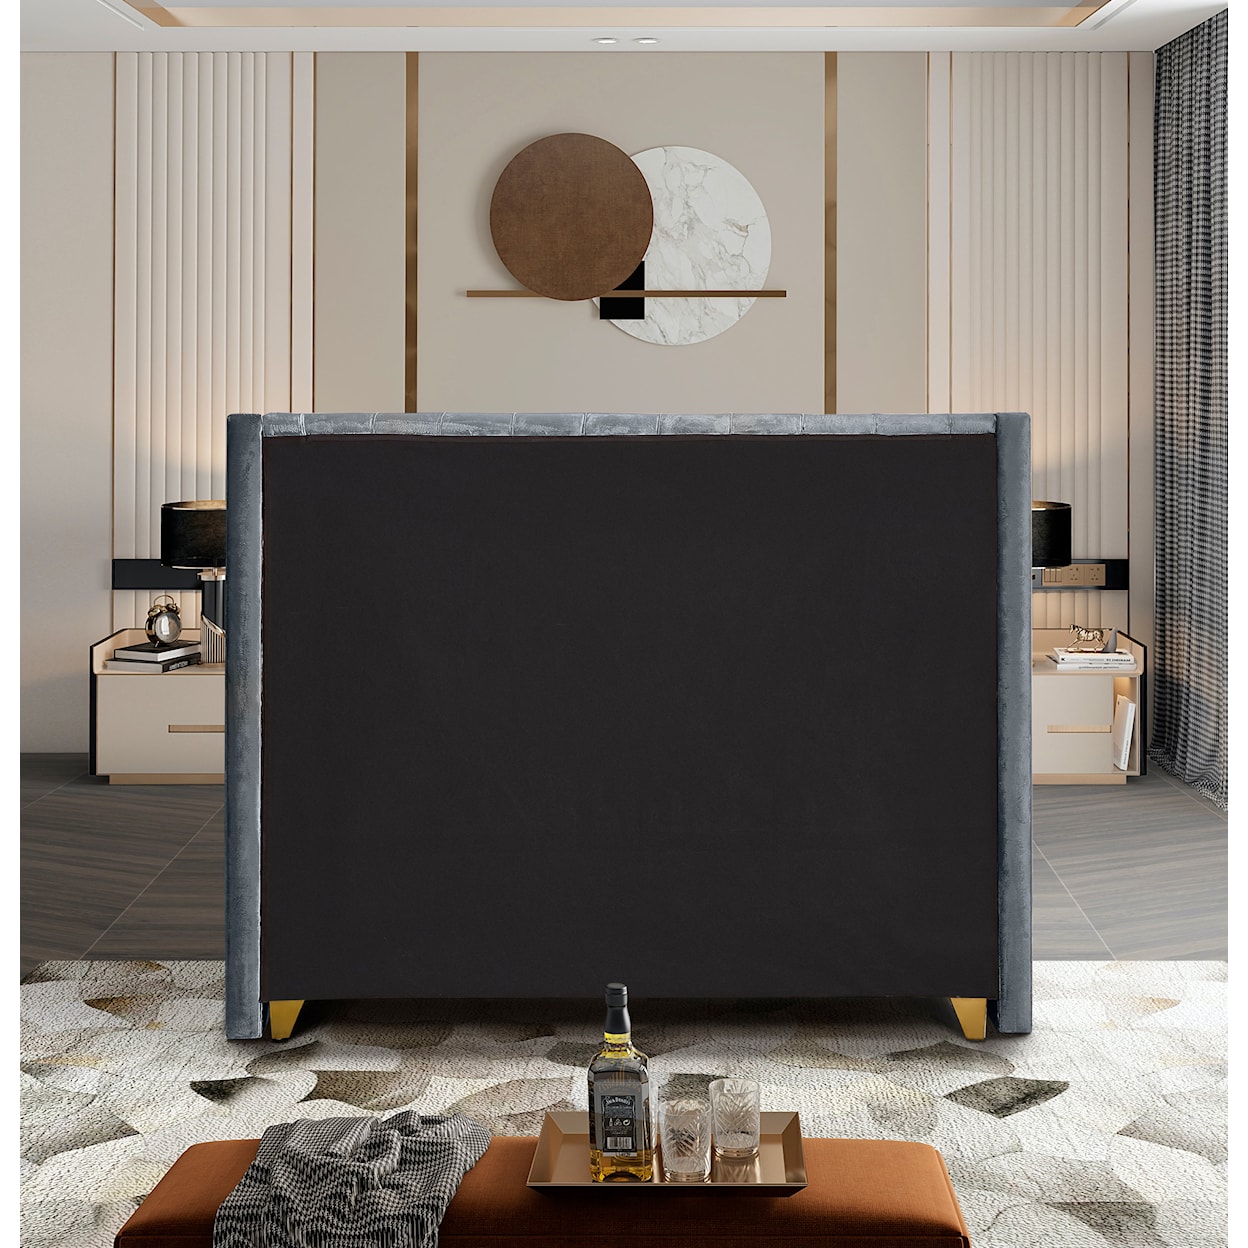 Meridian Furniture Barolo Upholstered Grey Velvet Full Bed